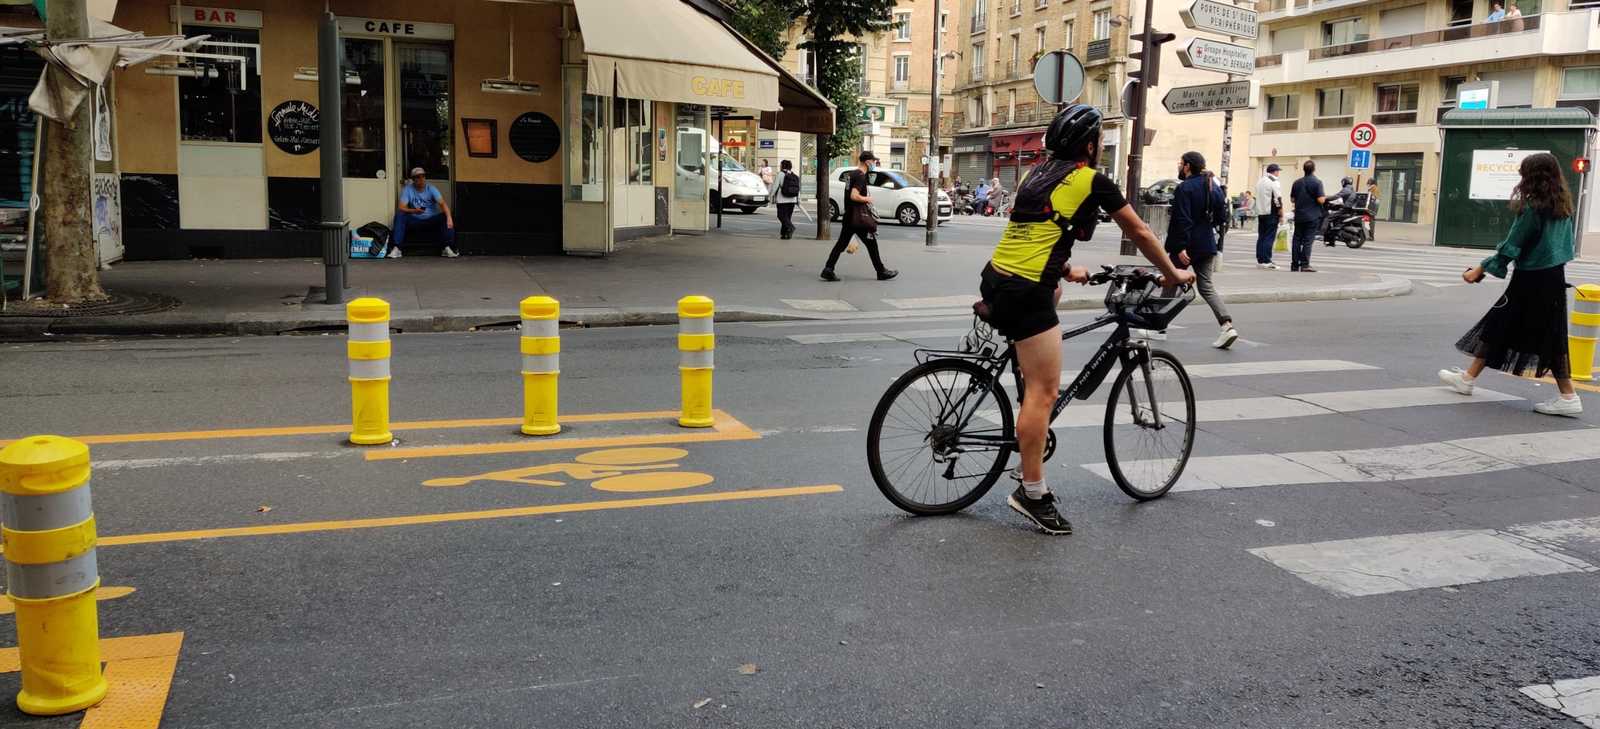 Fahrradfreundliche Städte. Paris hat während Corona mehr Fahrradspuren eingerichtet, sowie das generelle Fahrtempo auf 30 Kmh beschränkt.